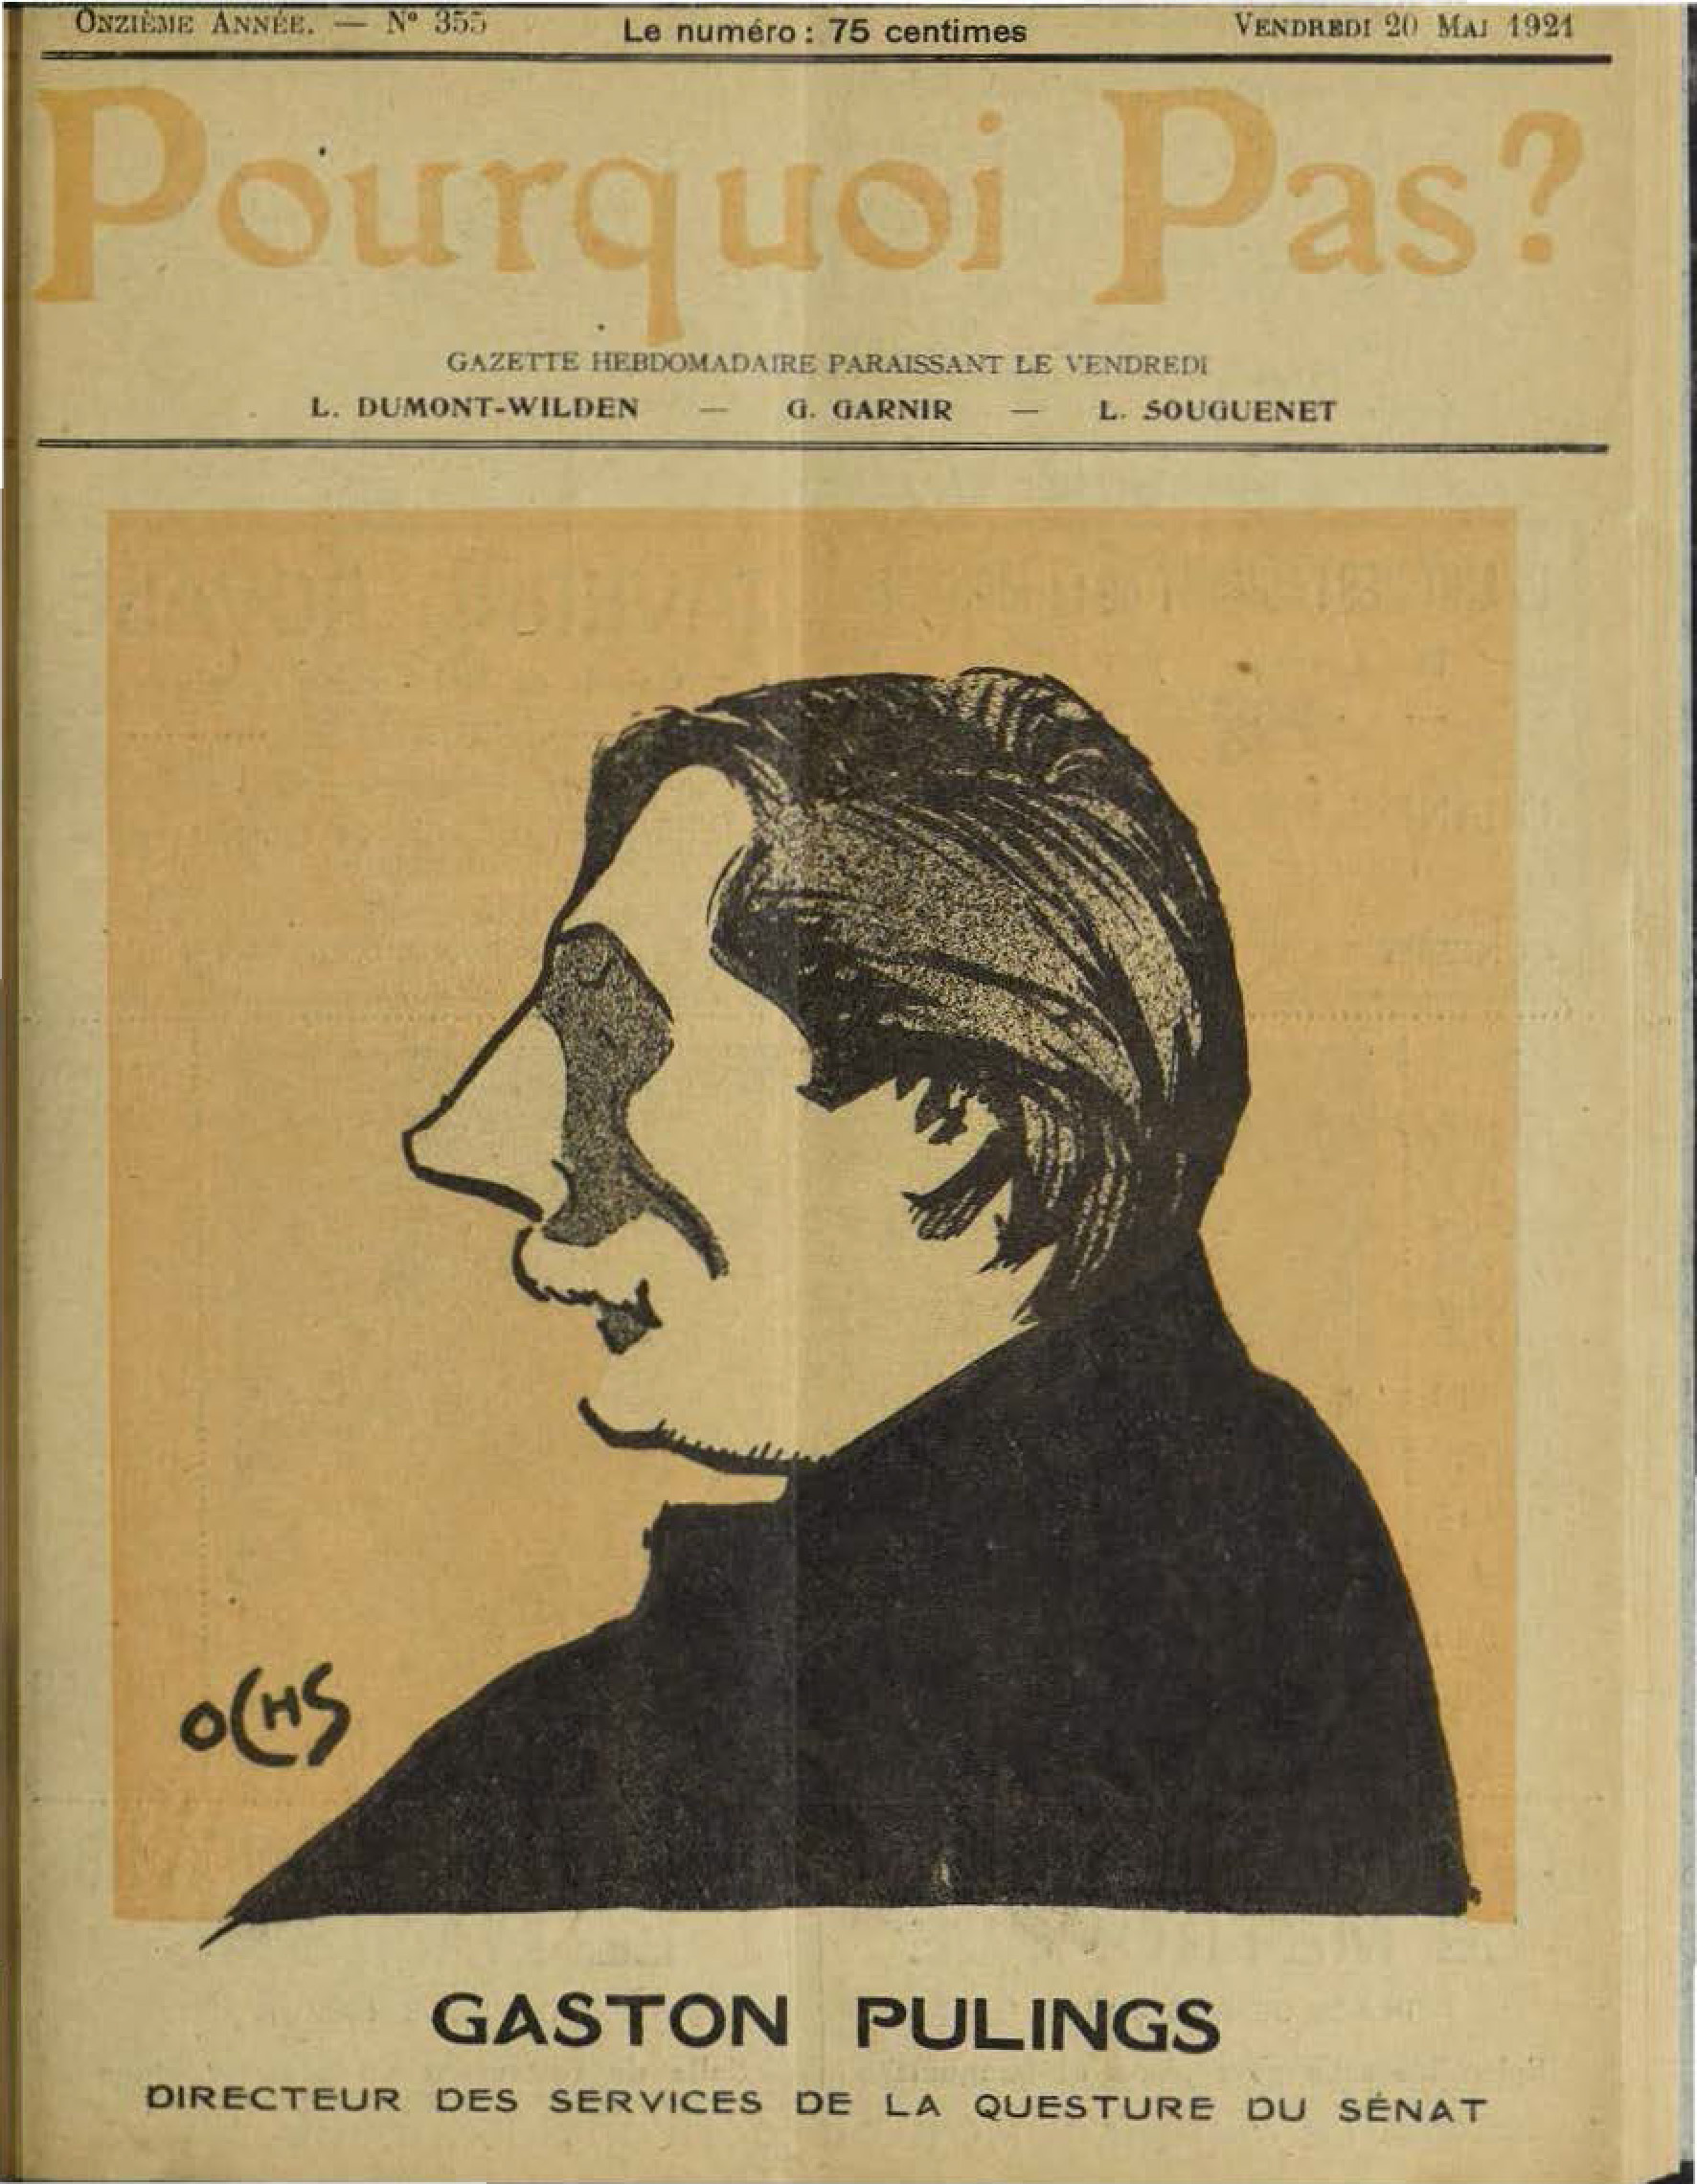 Profil de Gaston Pulings, Directeur des Services de la Questure du Snat, par Jacques Ochs sur la couverture du magazine Pourquoi Pas? du 20 mai 1921